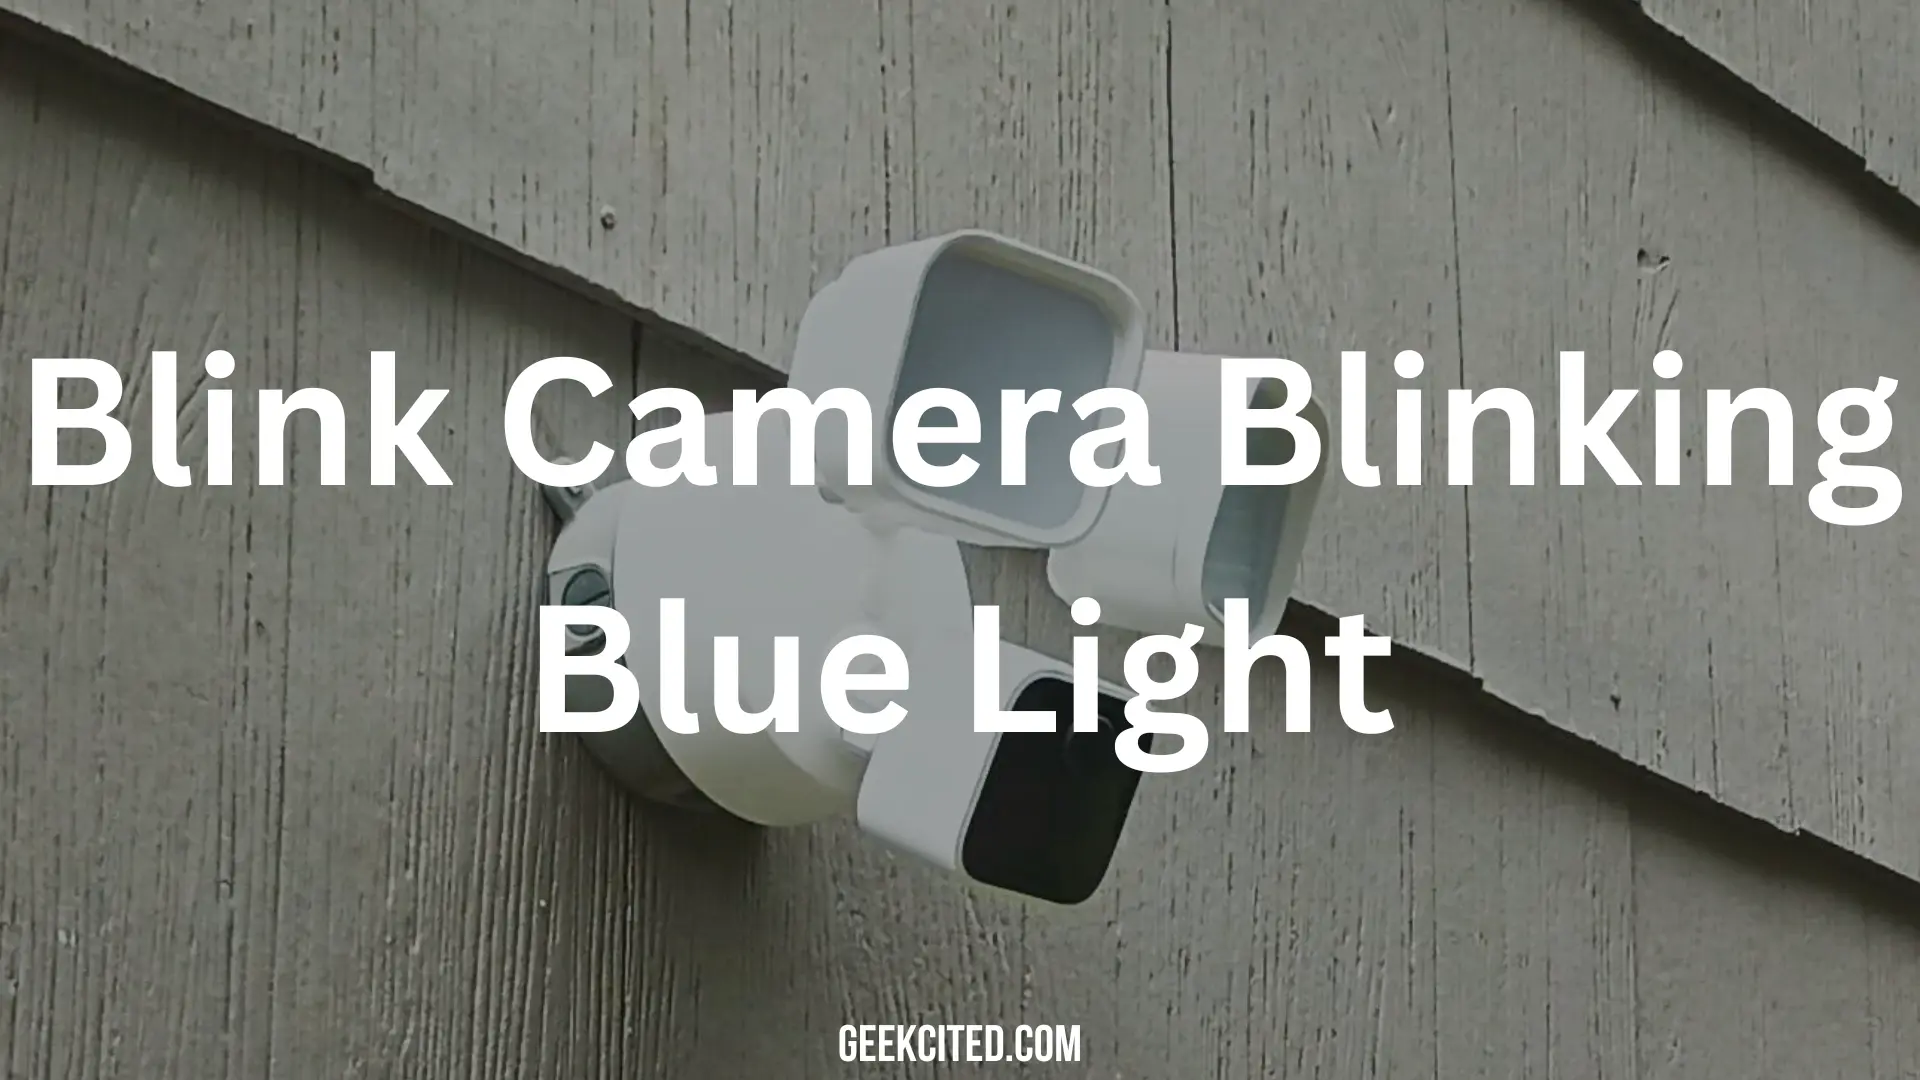 Blink Camera Blinking Blue Light